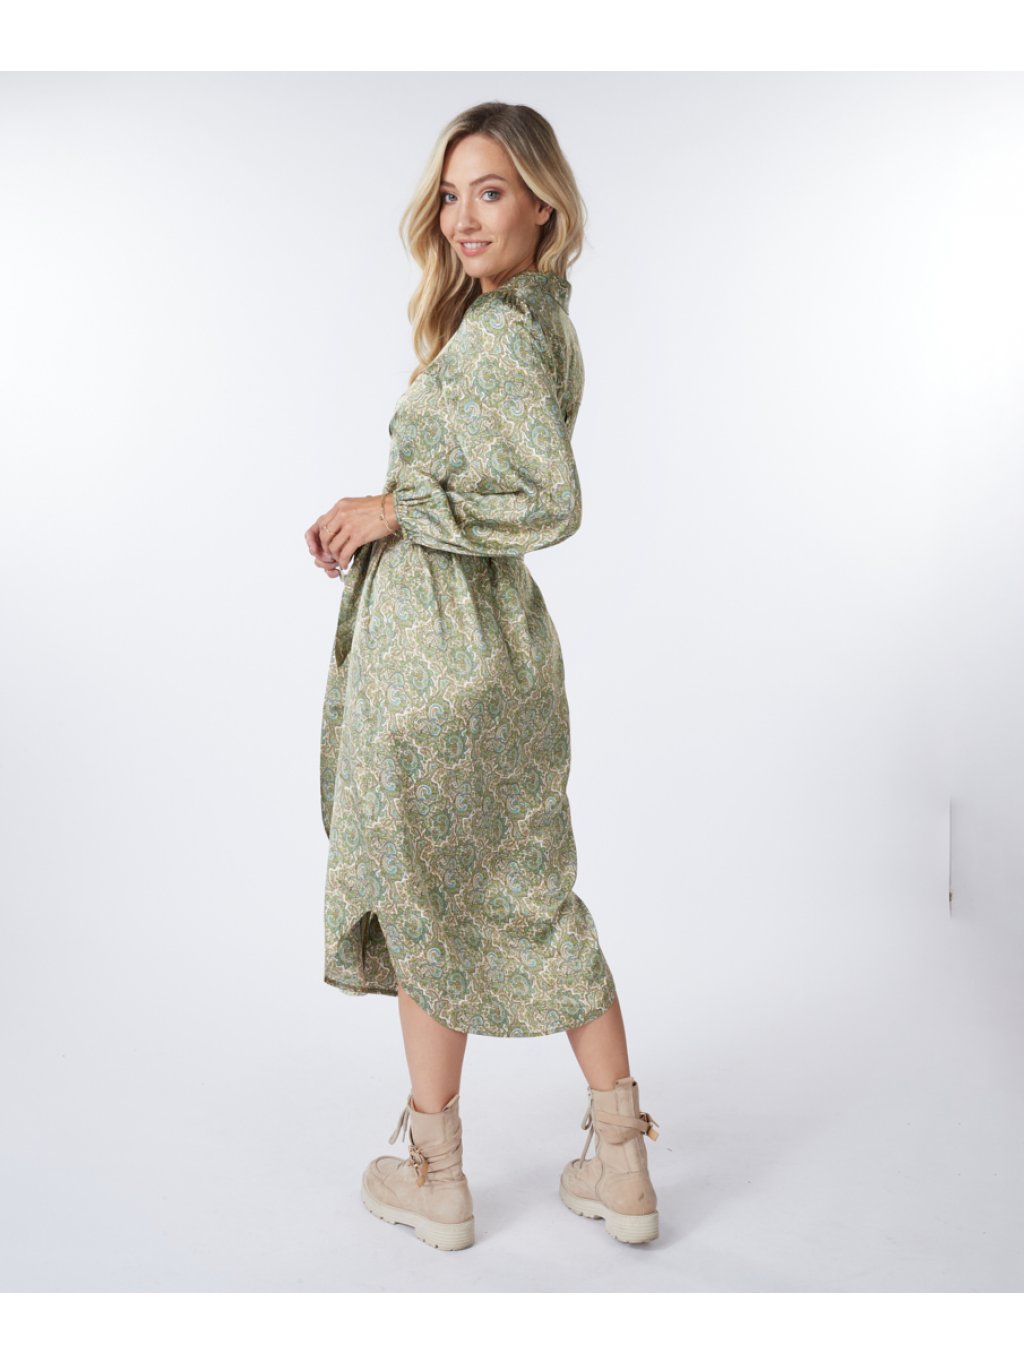 Šaty Esqualo 15522 zelené paisley vzor dlouhé